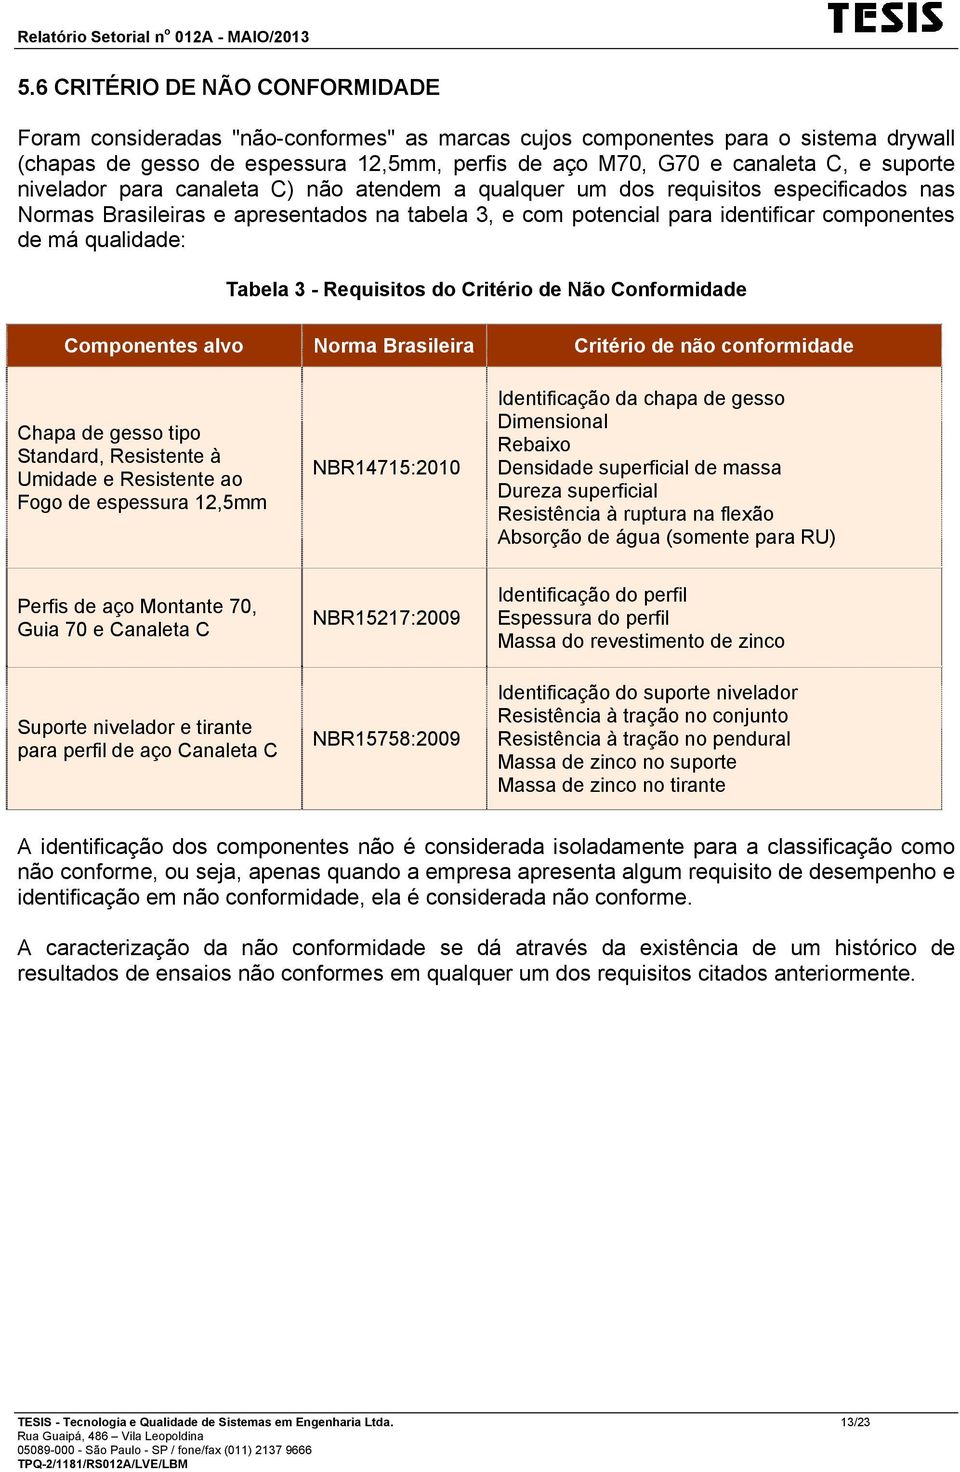 qualidade: Tabela 3 - Requisitos do Critério de Não Conformidade Componentes alvo Norma Brasileira Critério de não conformidade Chapa de gesso tipo Standard, Resistente à Umidade e Resistente ao Fogo